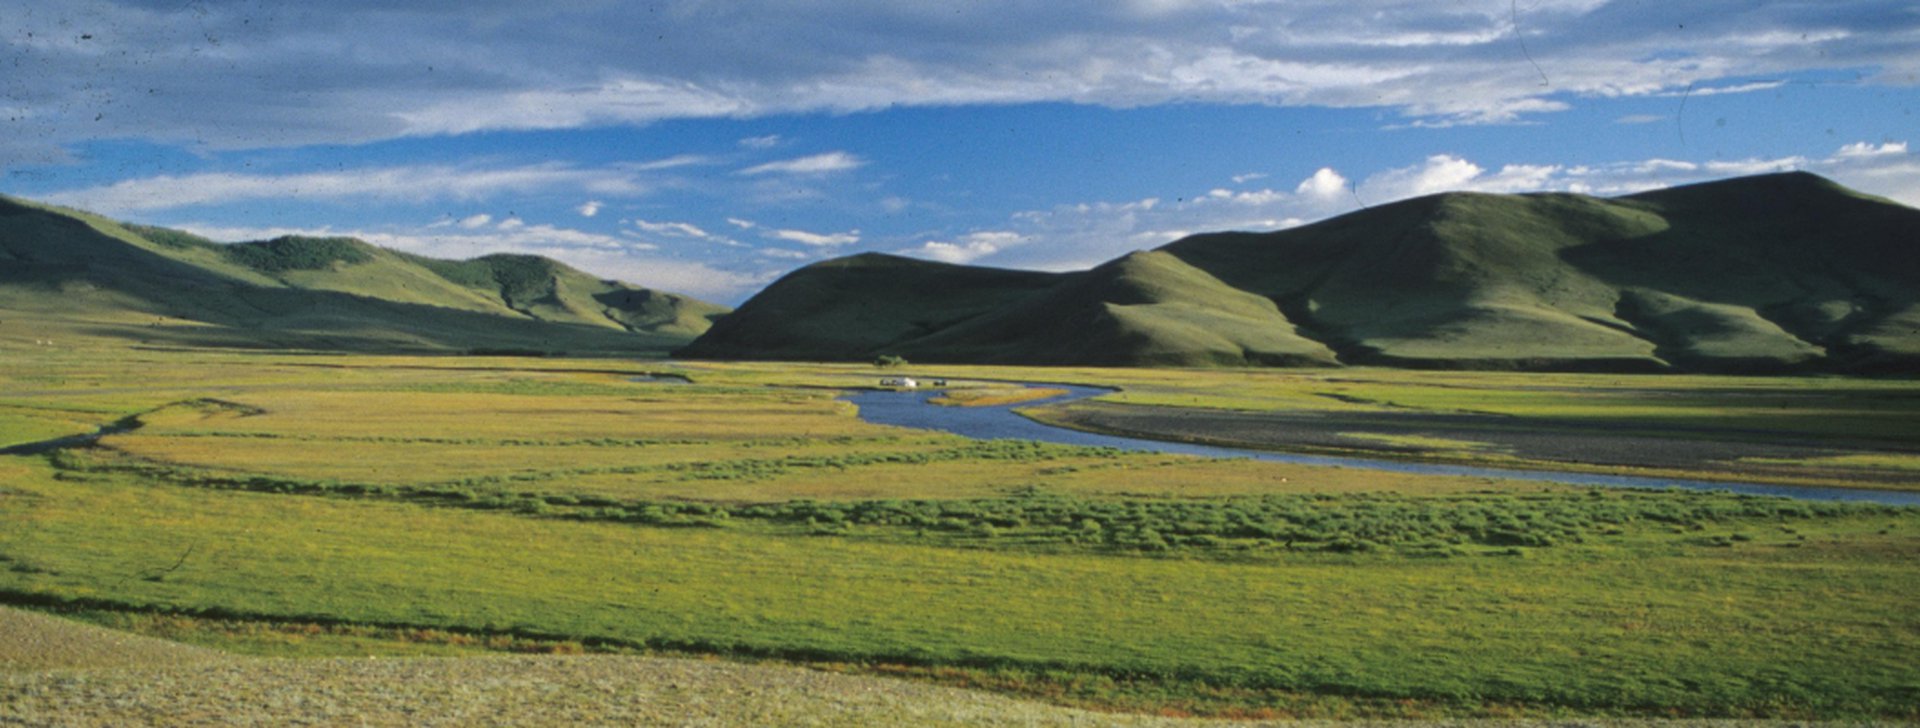 Reiseziele Mongolei